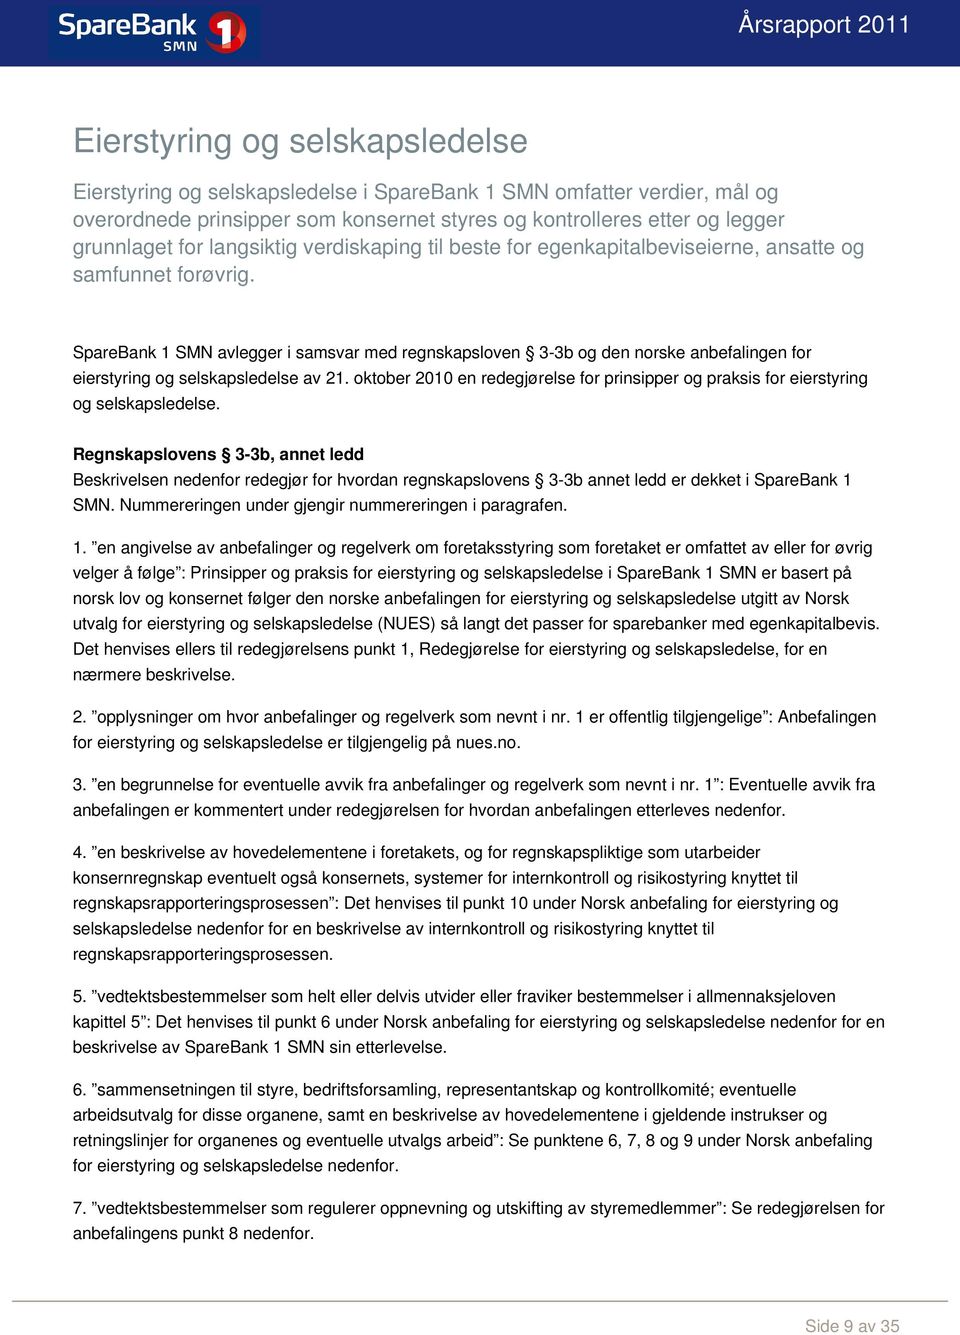 SpareBank 1 SMN avlegger i samsvar med regnskapsloven 3-3b og den norske anbefalingen for eierstyring og selskapsledelse av 21.